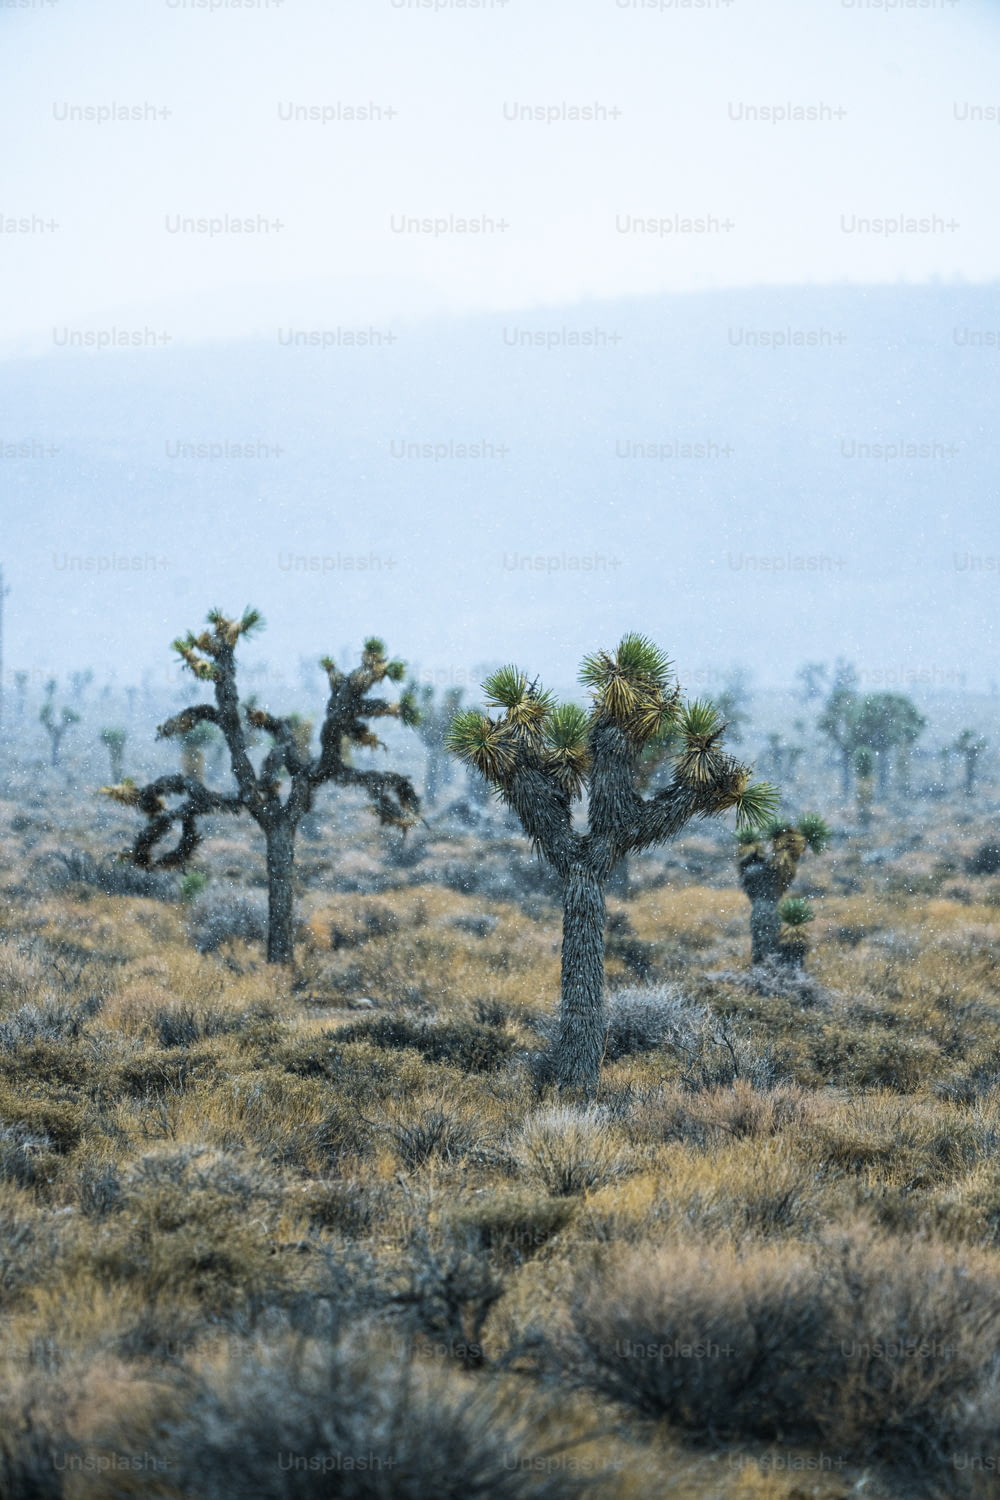 Un gruppo di alberi di Joshua nel deserto